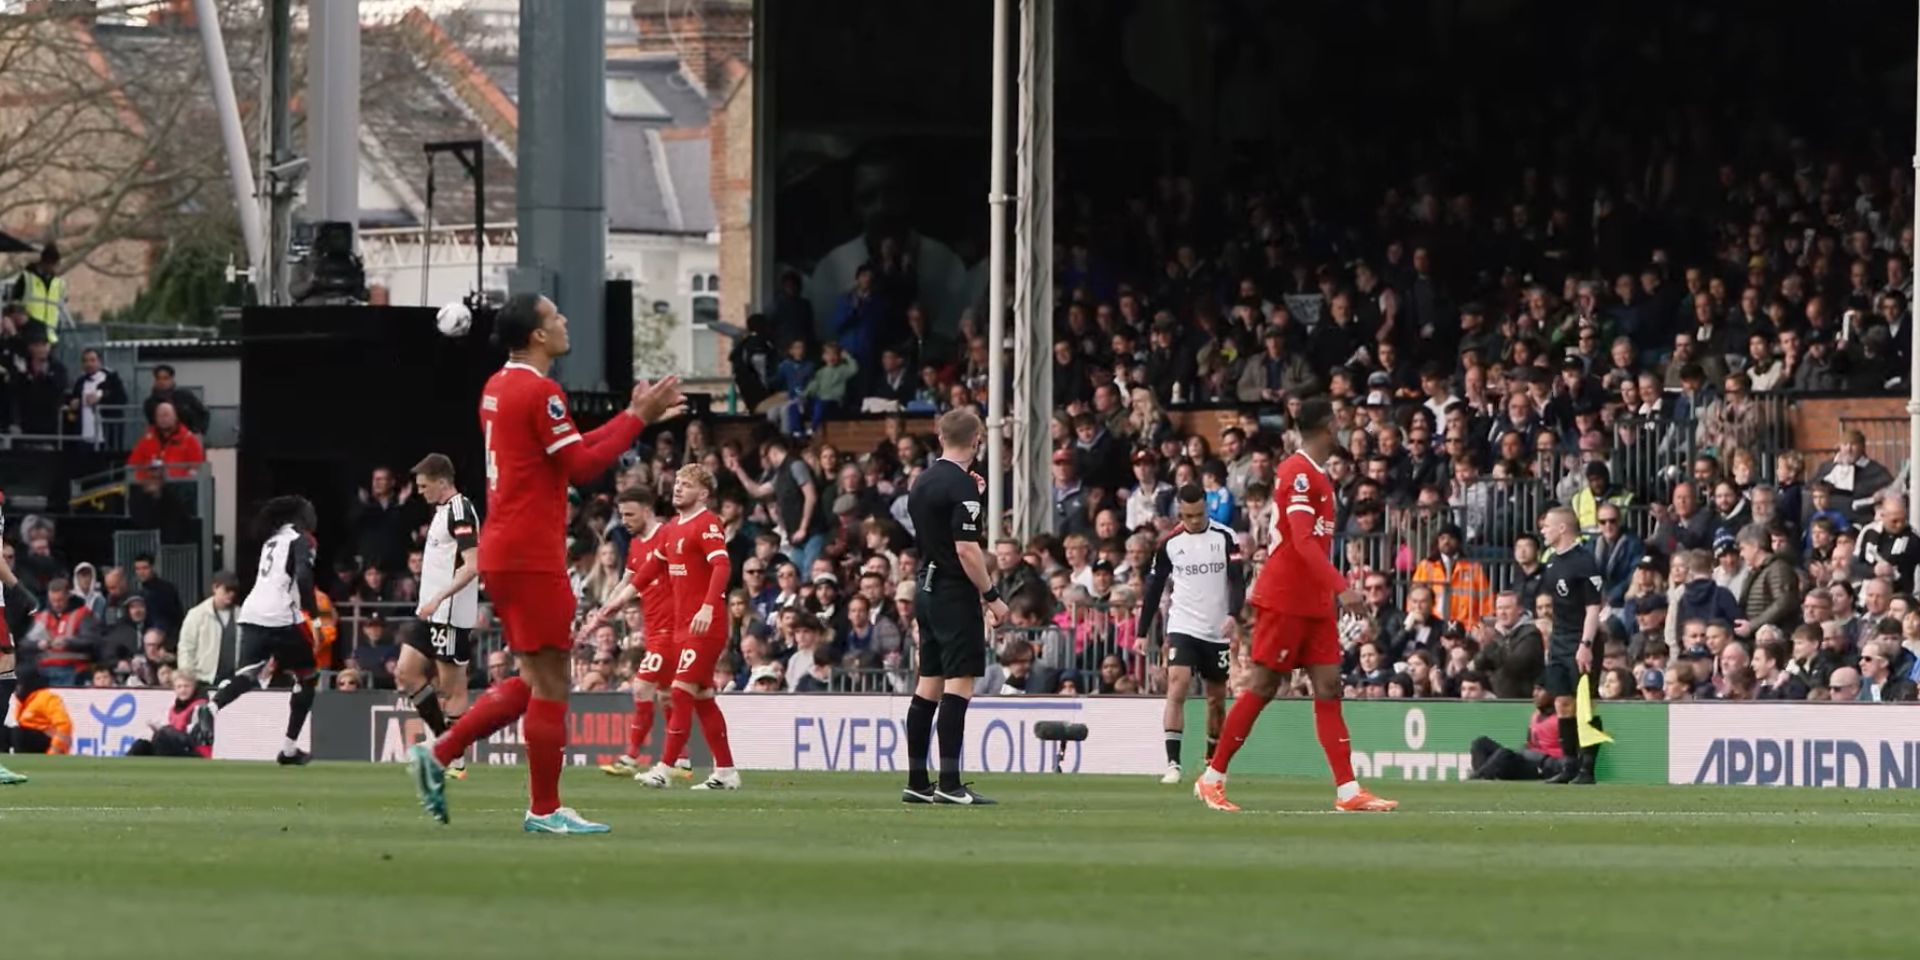 (Video) Virgil van Dijk’s half-time reaction against Fulham was telling